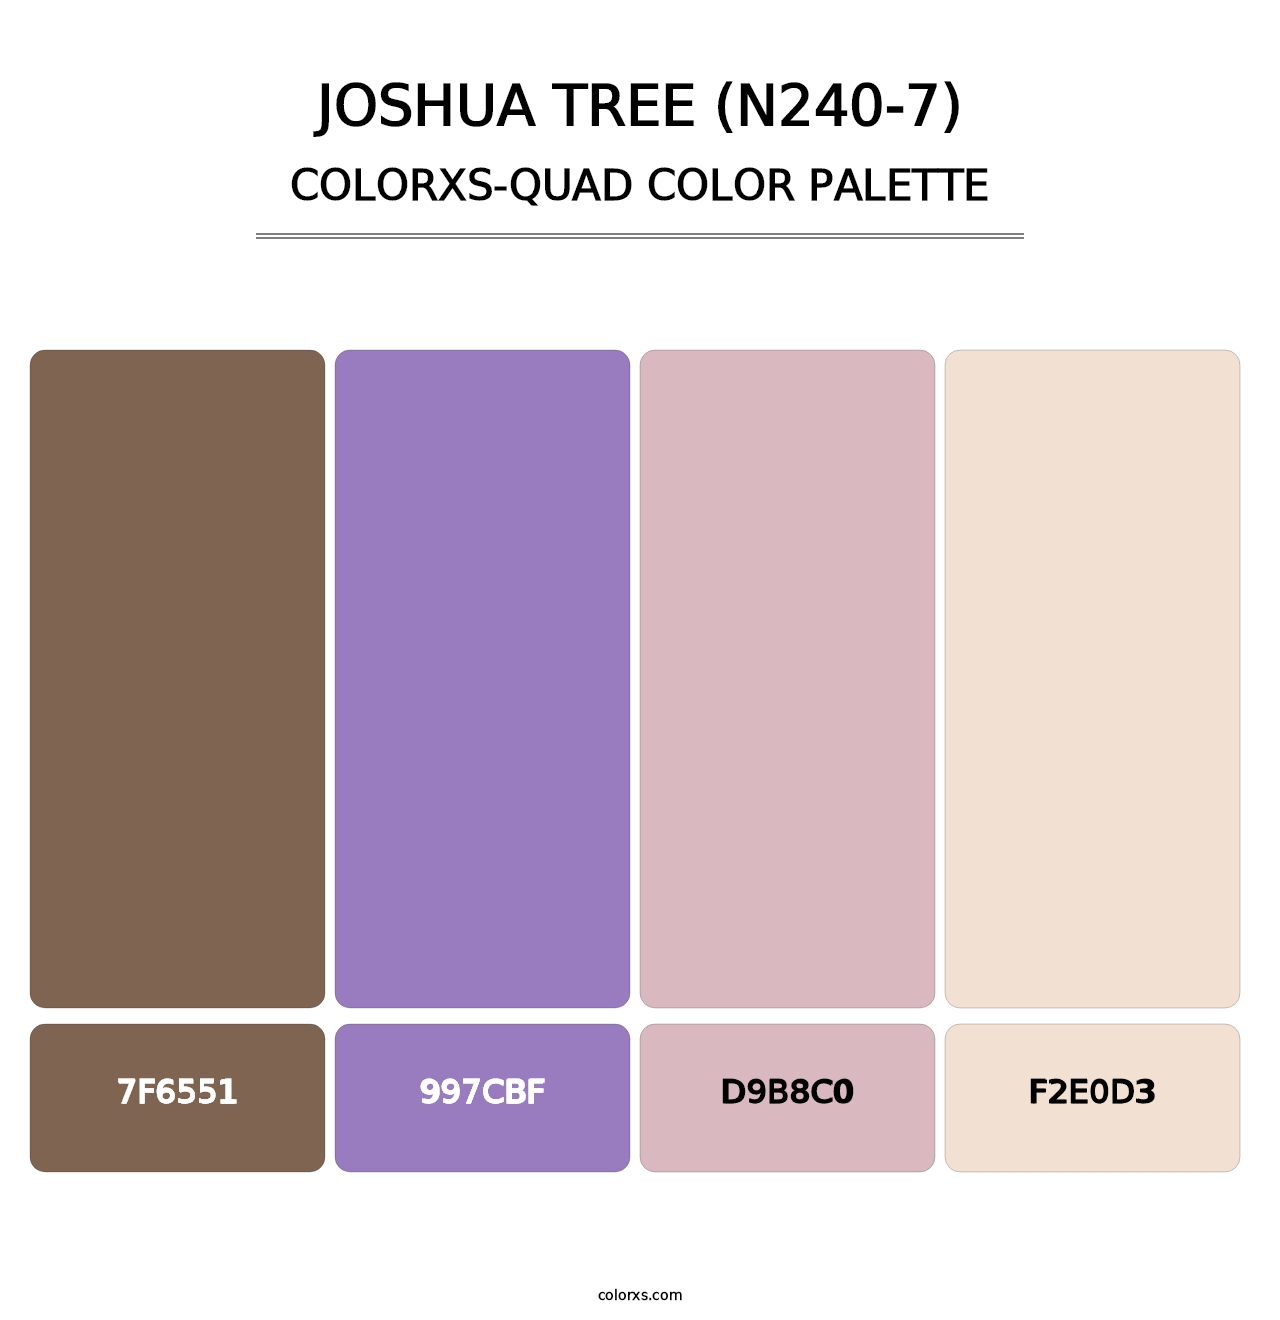 Joshua Tree (N240-7) - Colorxs Quad Palette